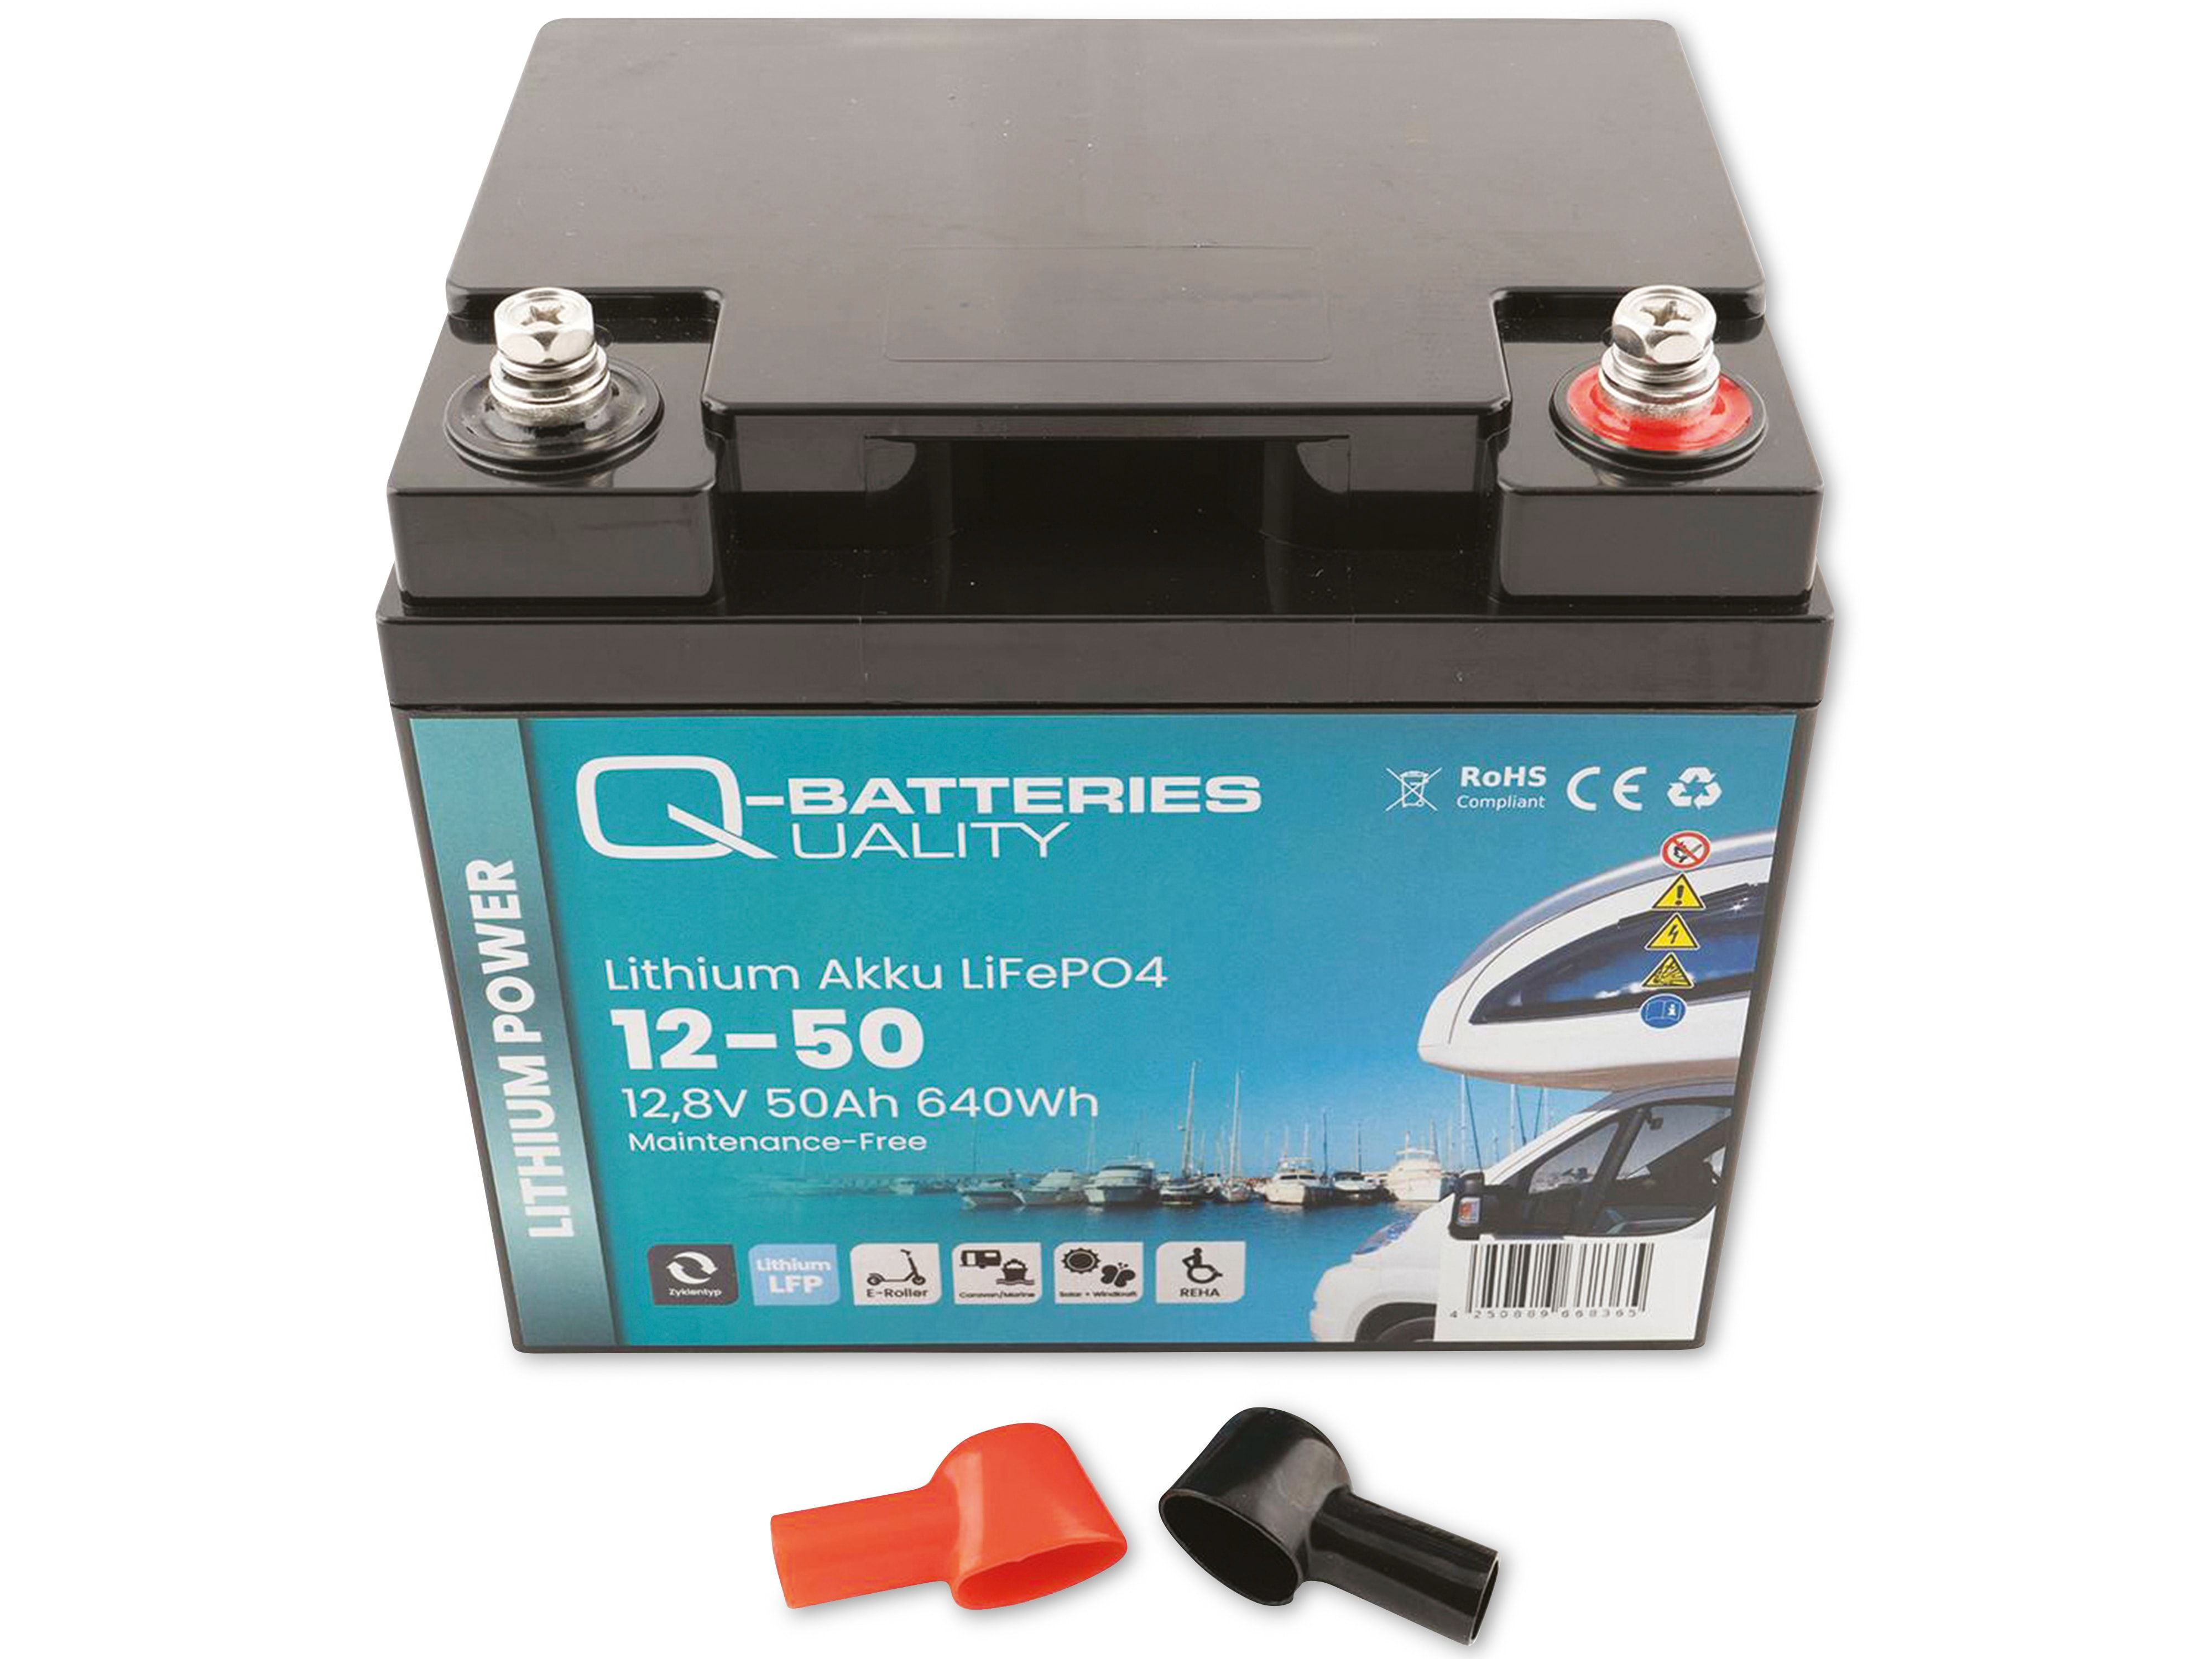 50Ah Akku Lithium-Eisenphosphat 640Wh Batterie Q-BATTERIES Lithium Akku 12-50 LiFePO4 12,8V,